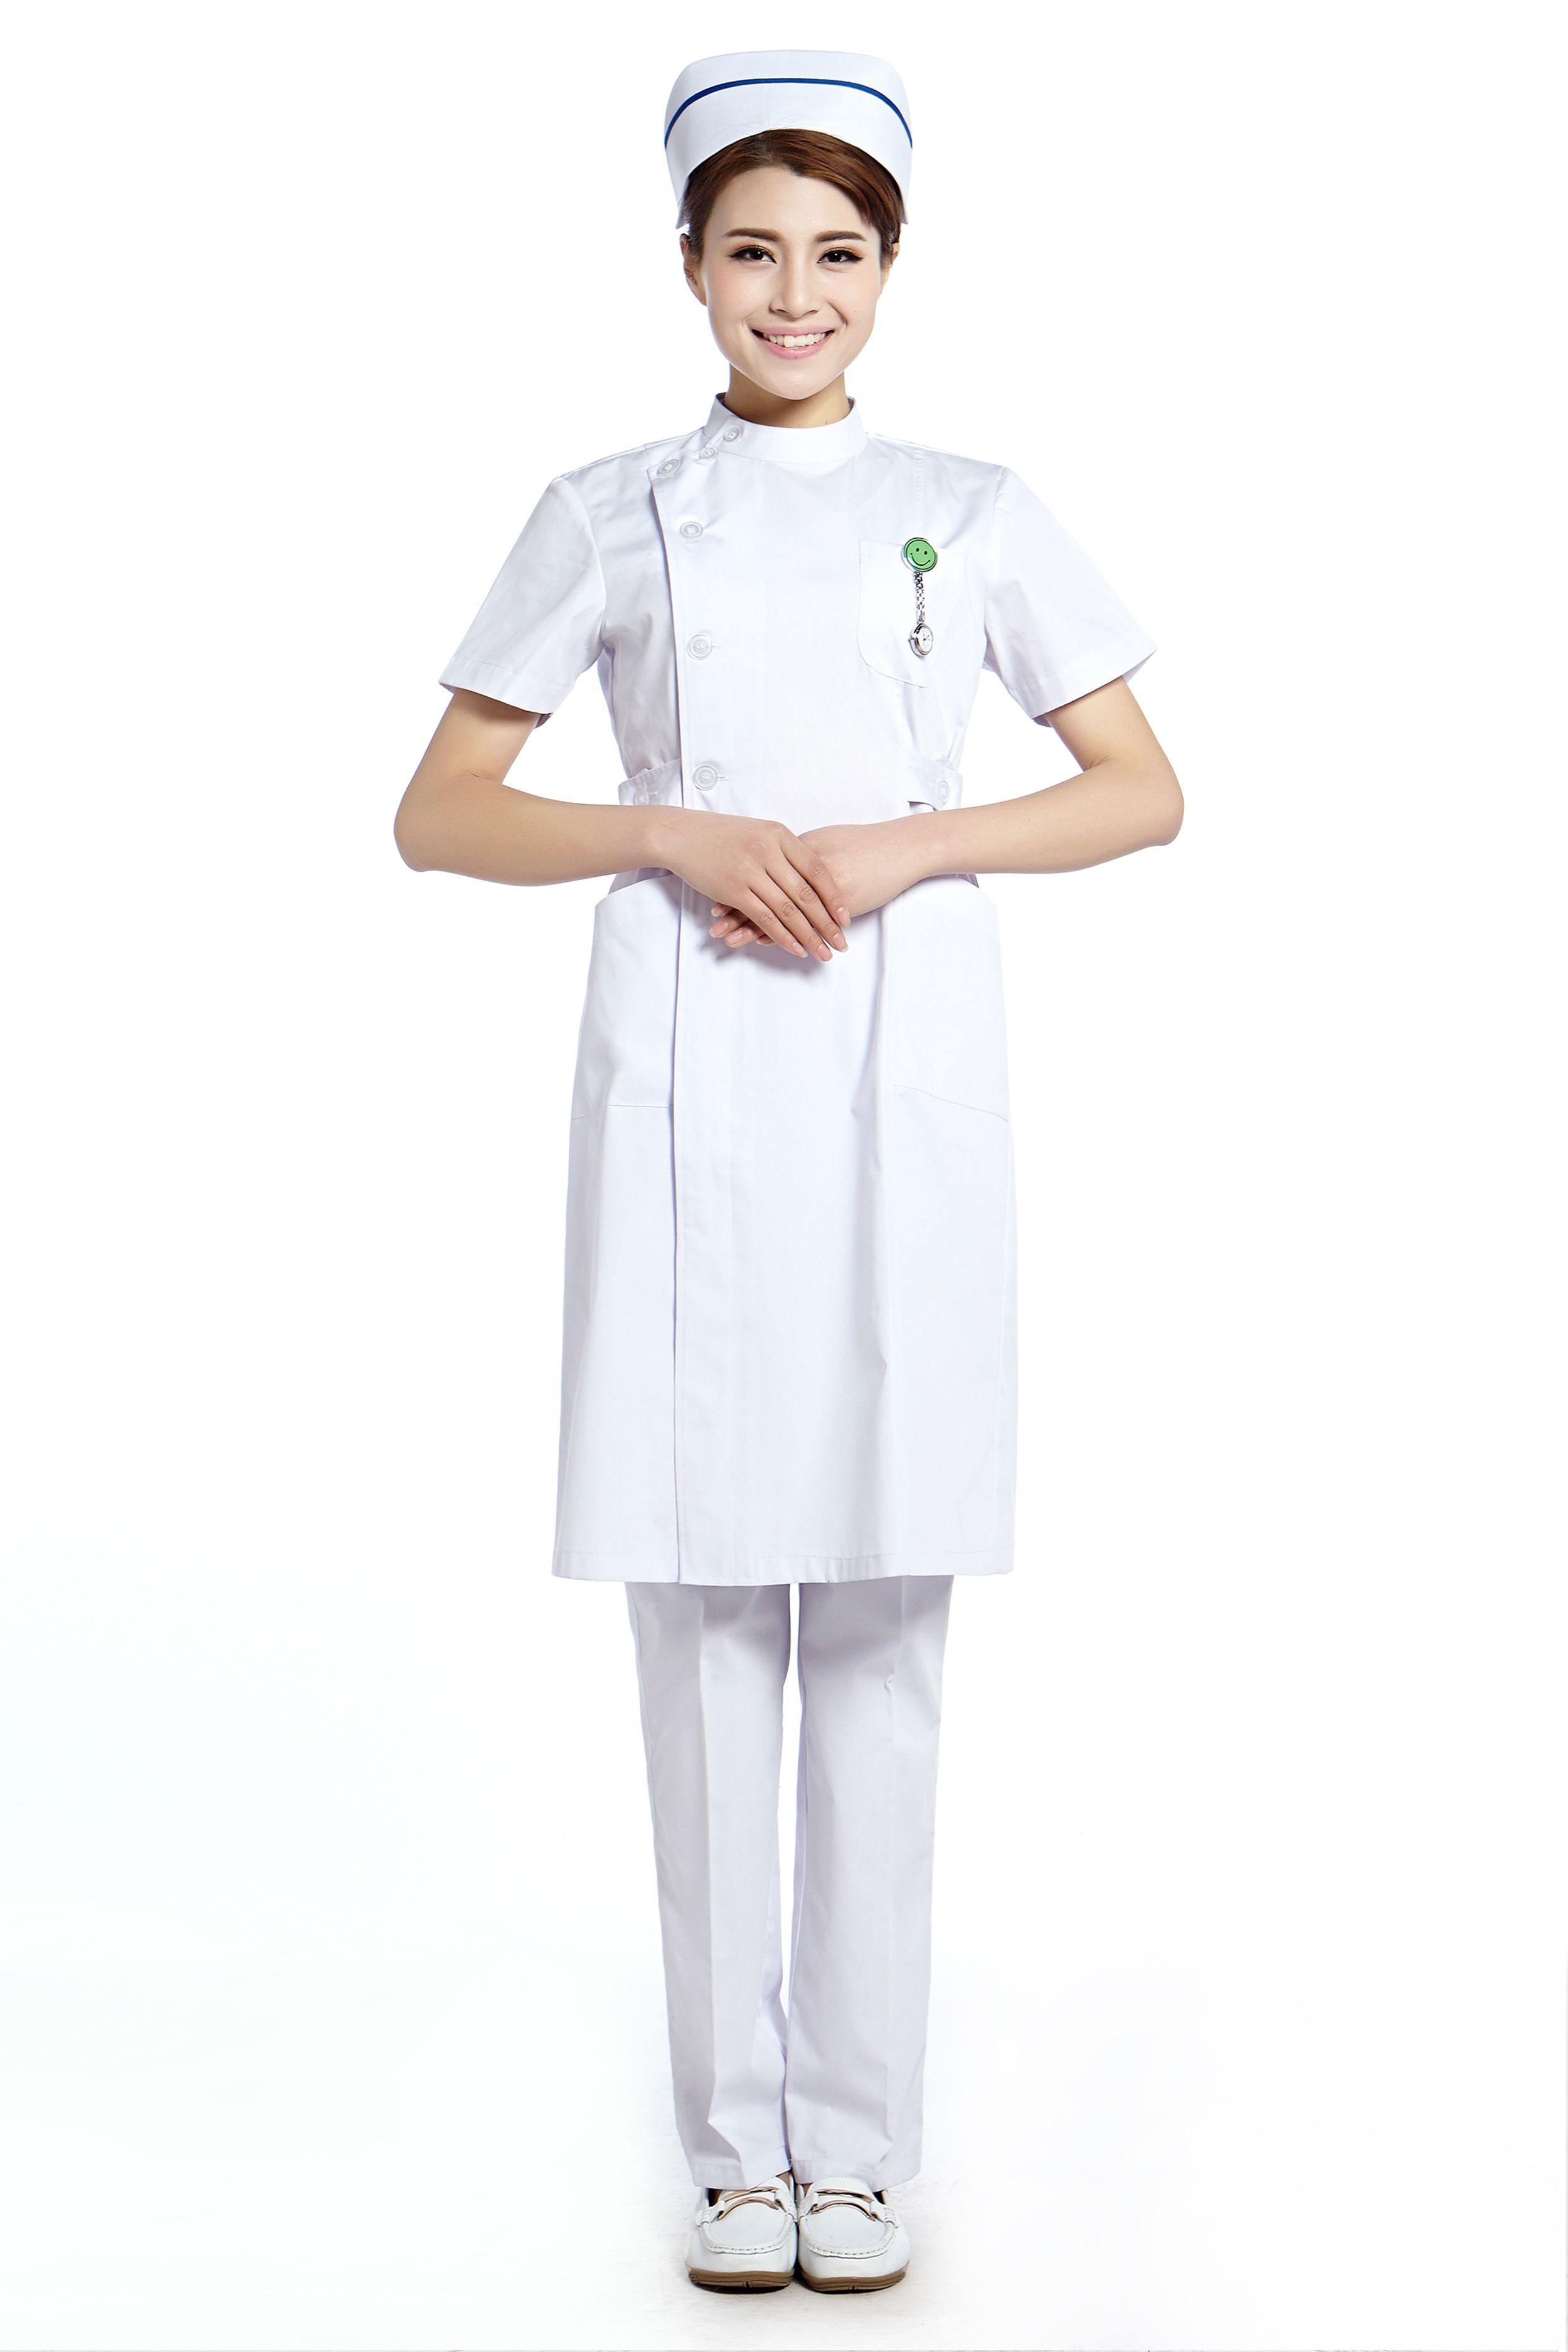 Nurse Uniform Pictures 104